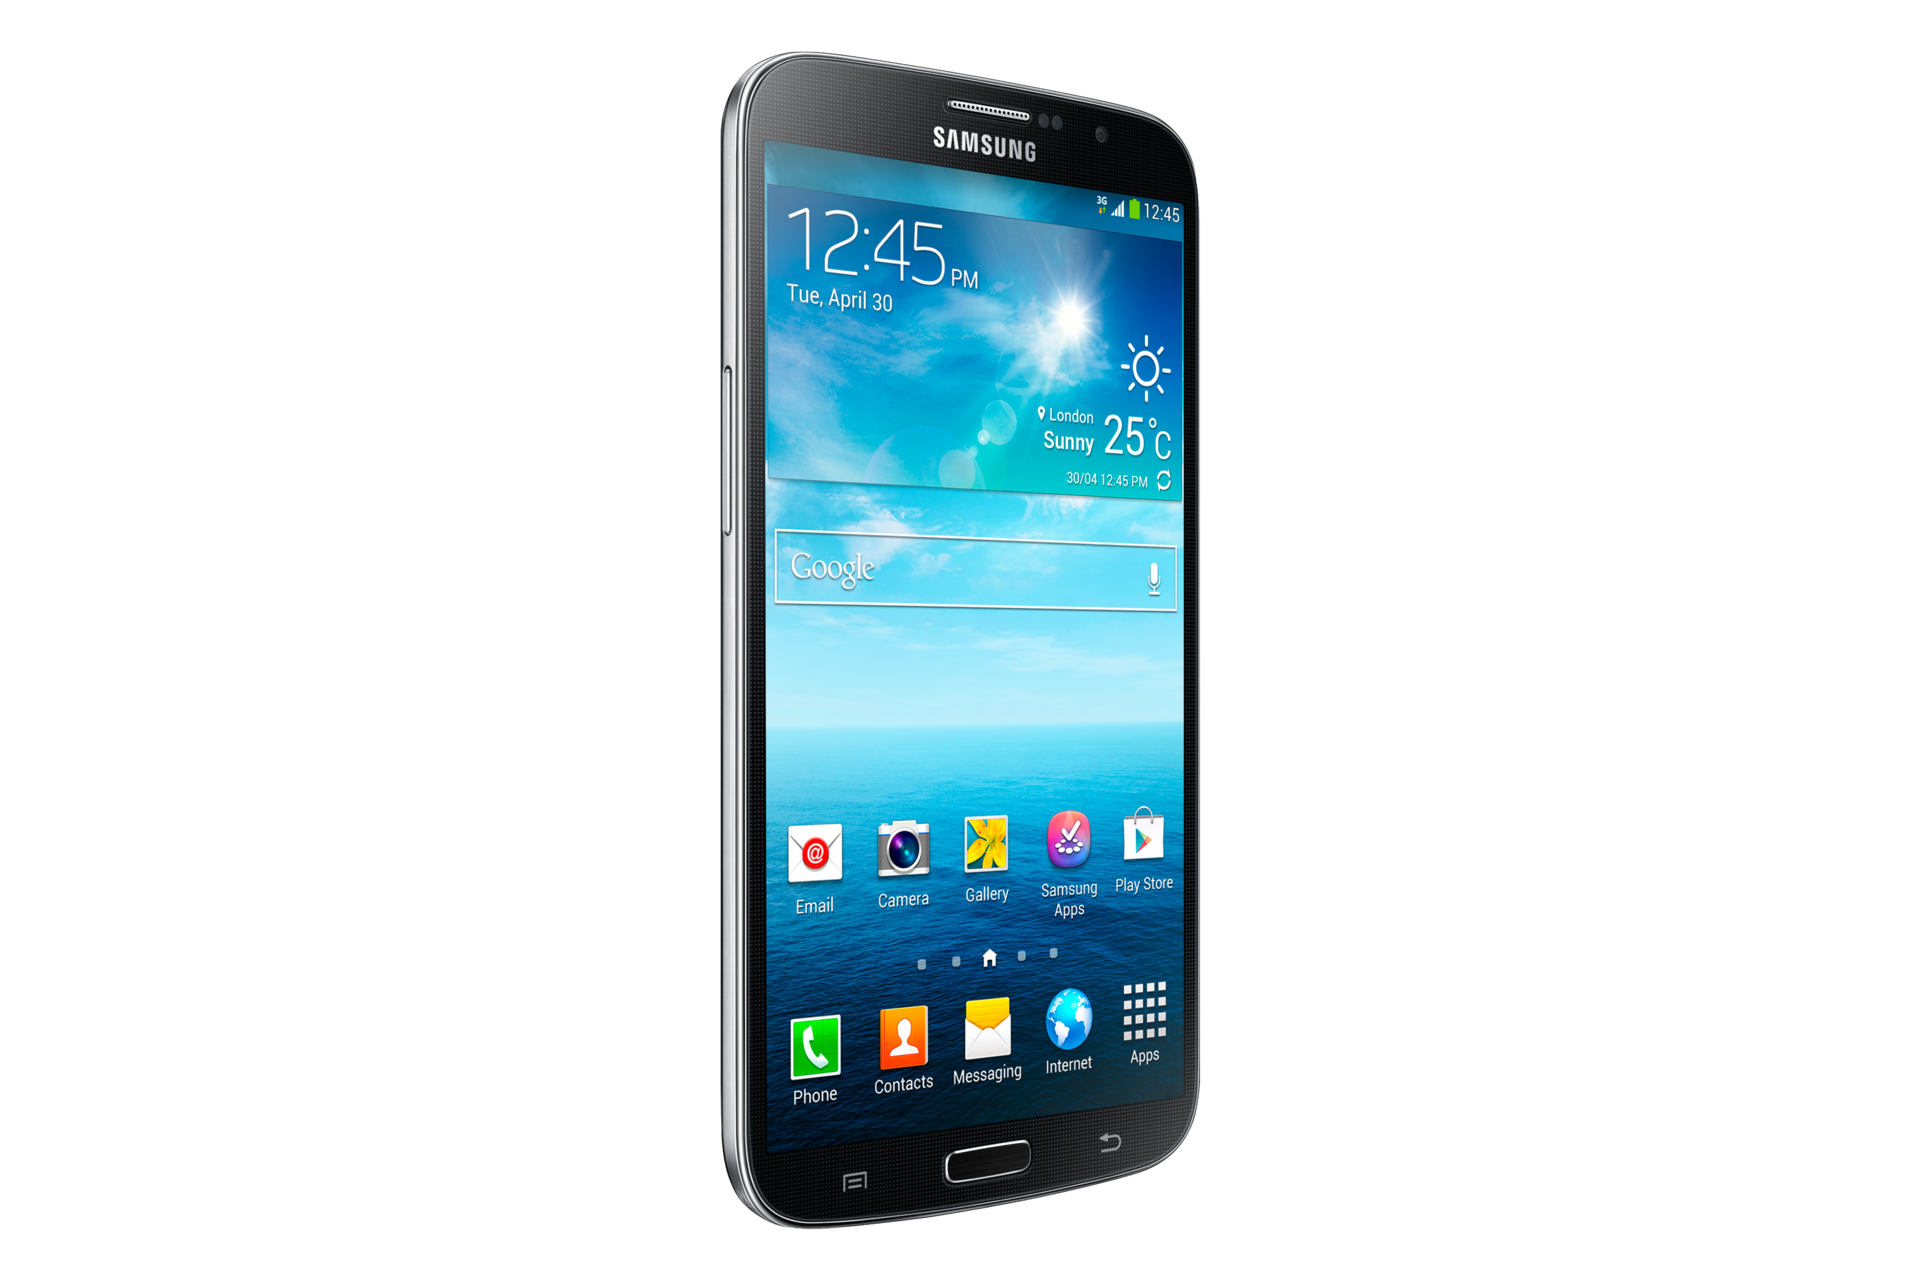 جالكسي ميجا 6.3 صور ومواصفات وسعر جوال سامسونج Samsung Galaxy Mega 6.3 I9200